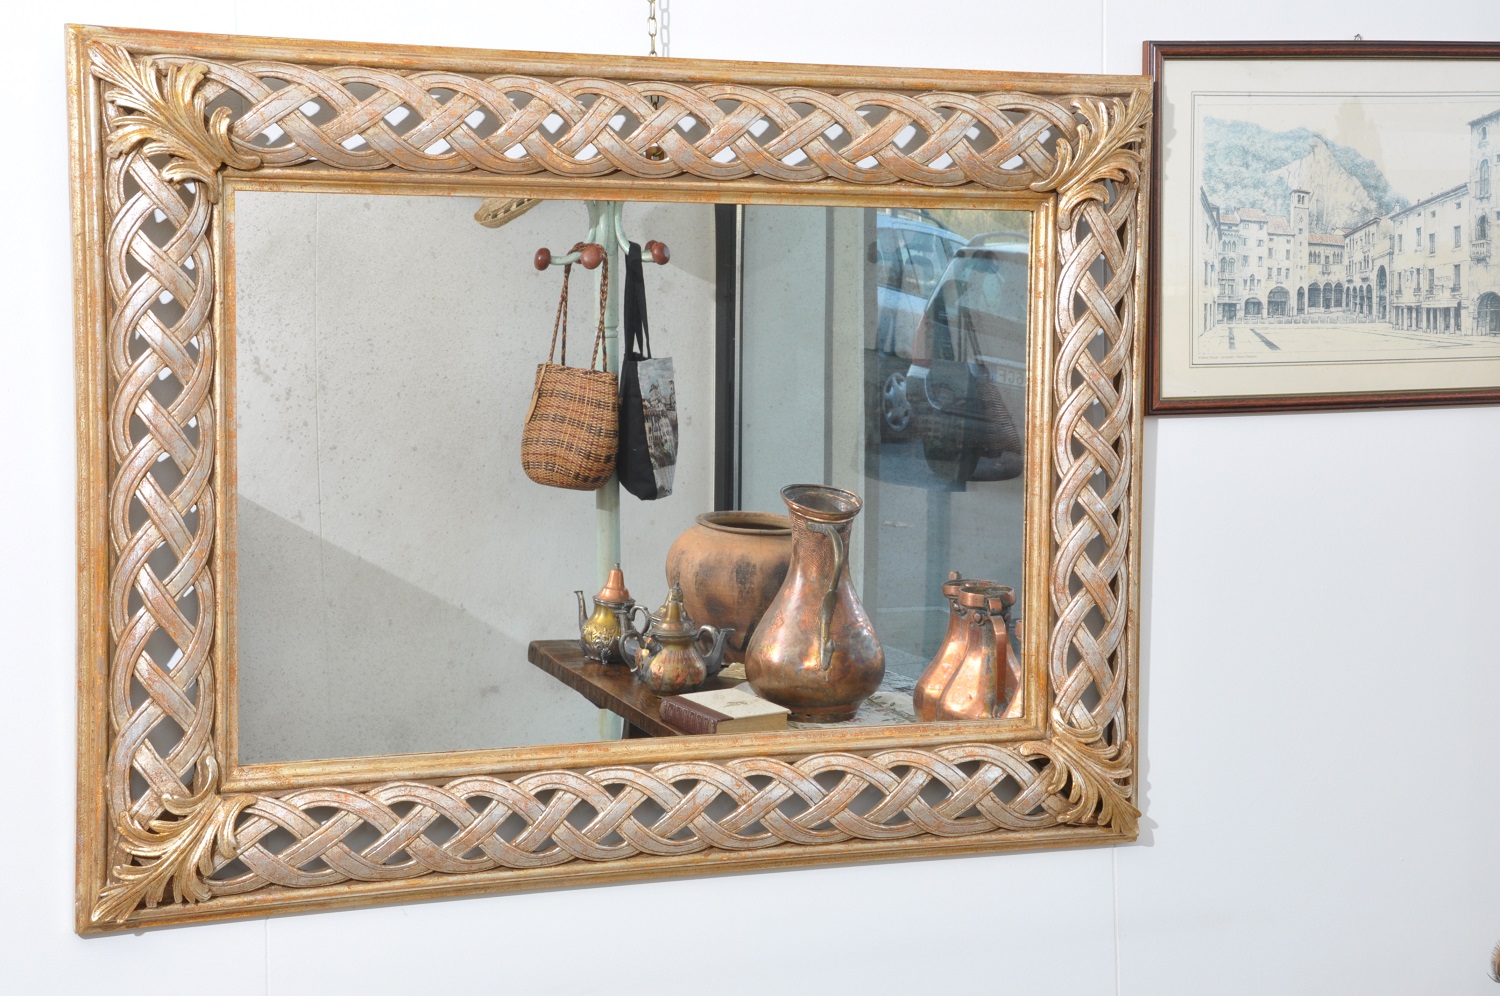 specchiera veneziana di lusso made in Italy fatto a mano e su misura sagomata e traforata a treccia su legno di tiglio massello laccata in foglia oro e argento prodotta artigianalmente